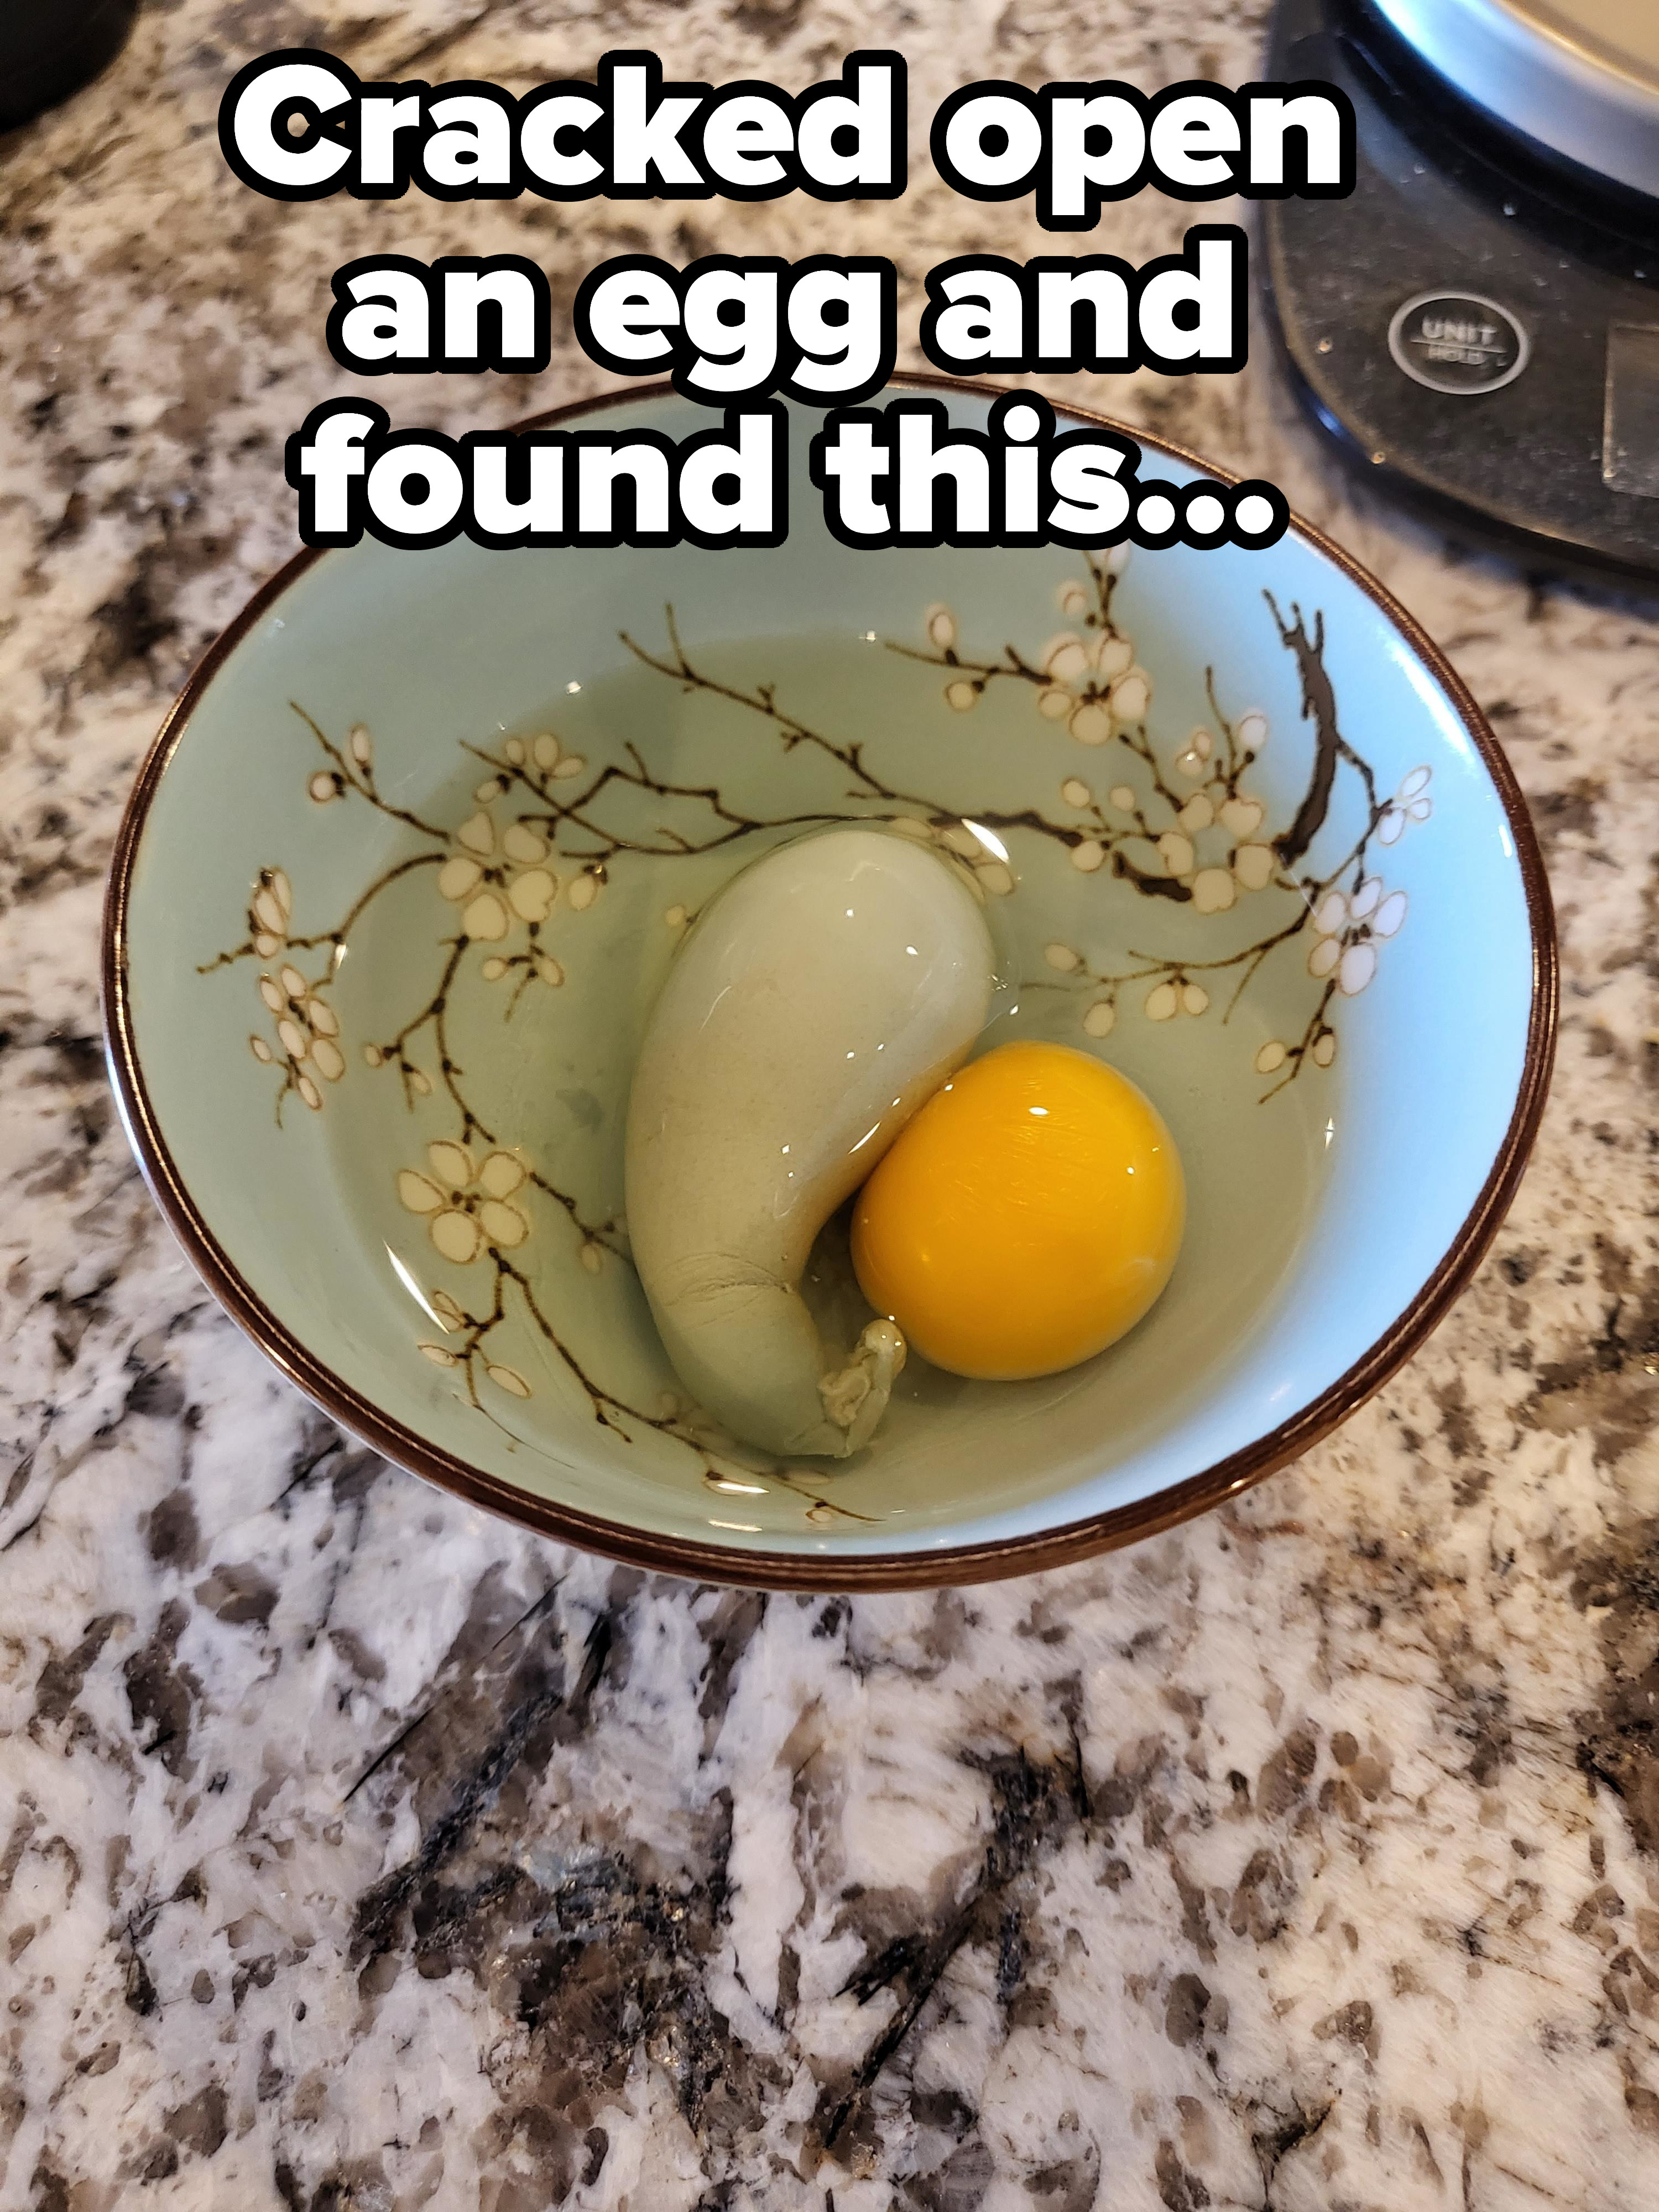 Strange egg innards, including what looks like a boiled egg white fetus